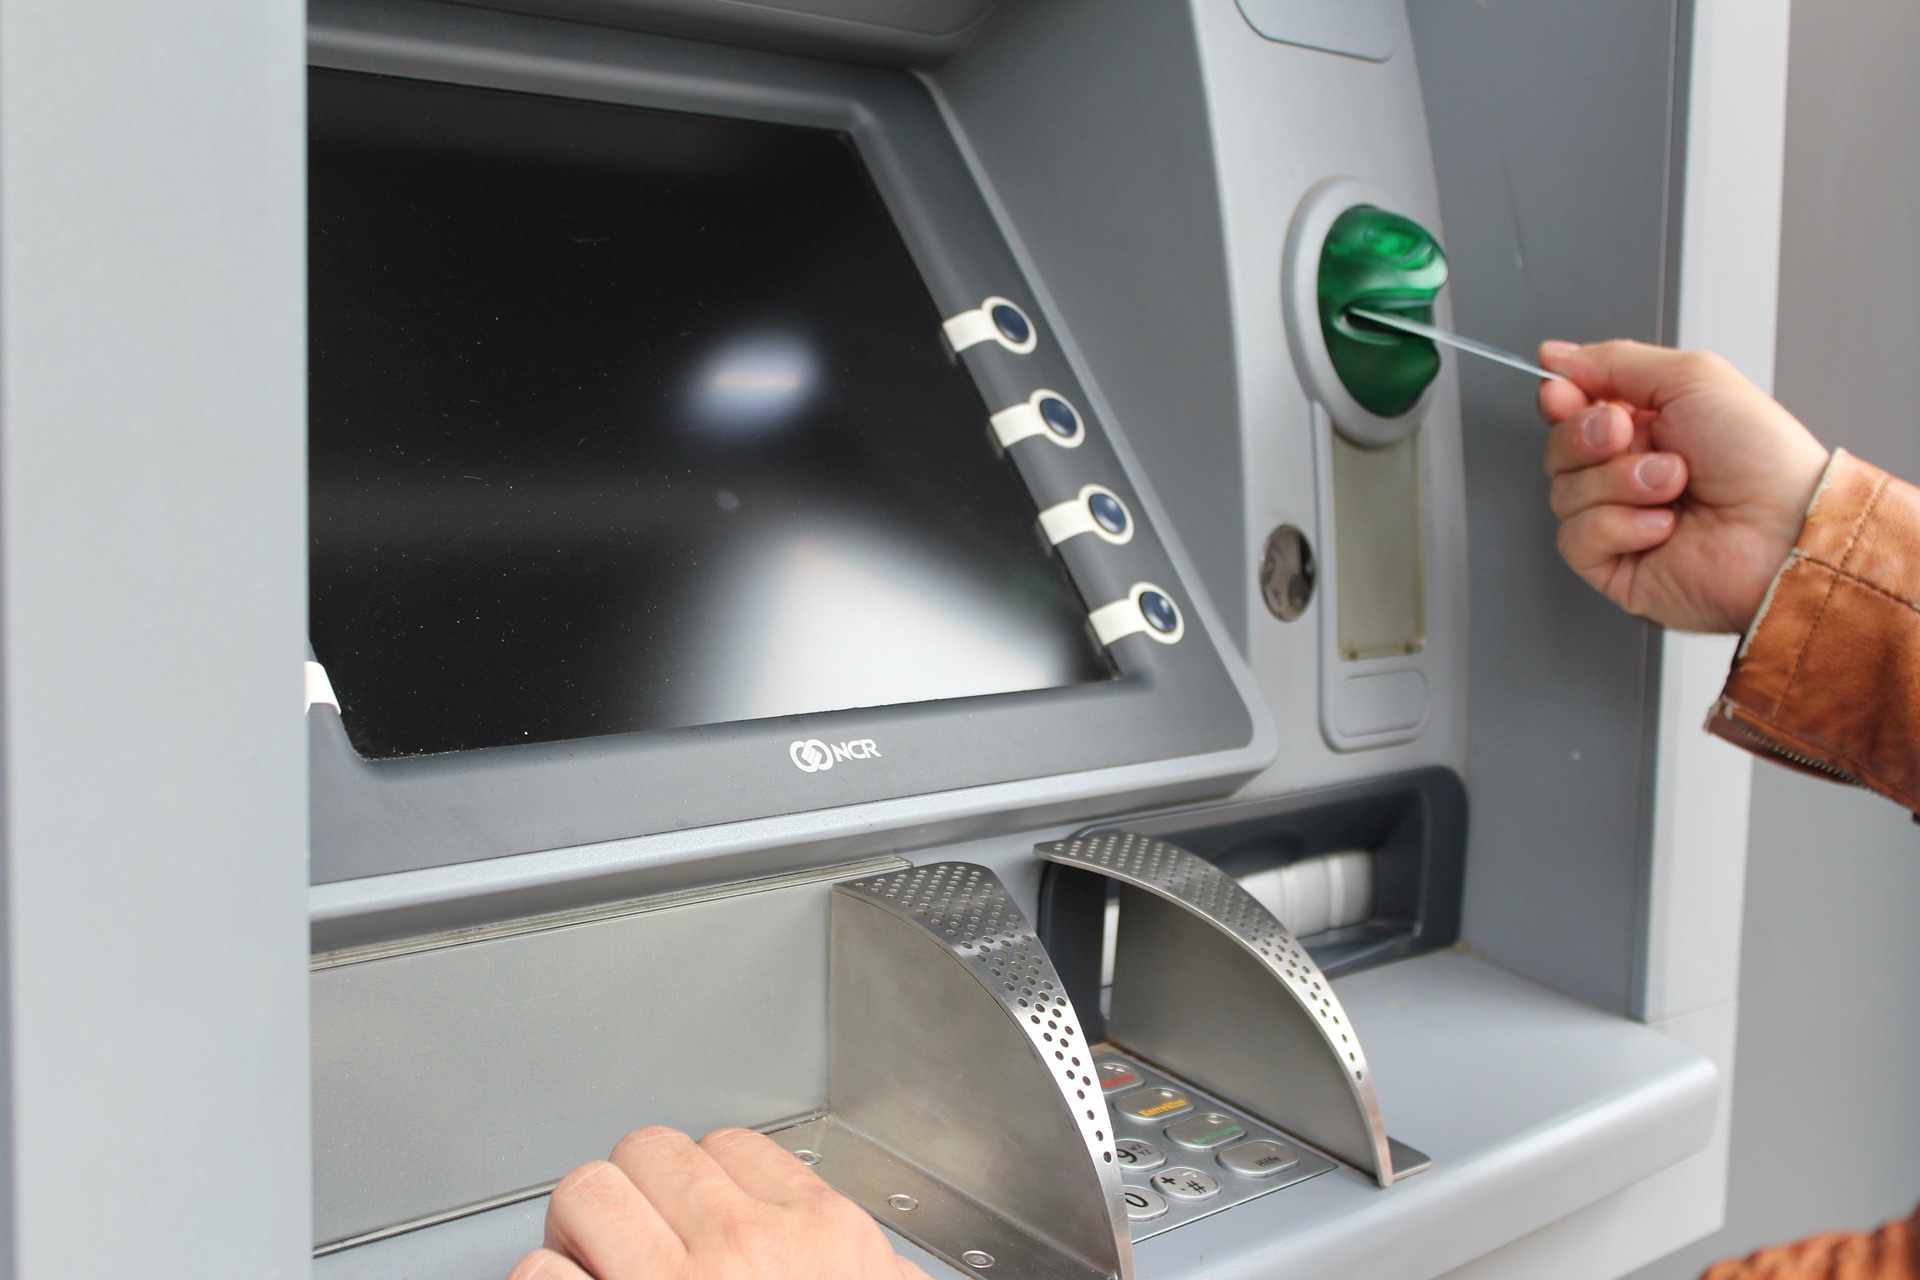 ماكينة الصراف الآلي ATM - إتمام المعاملات الأساسية دون الحاجة إلى مساعدة ممثل الفرع أو الصراف - بطاقة ائتمان أو بطاقة خصم 